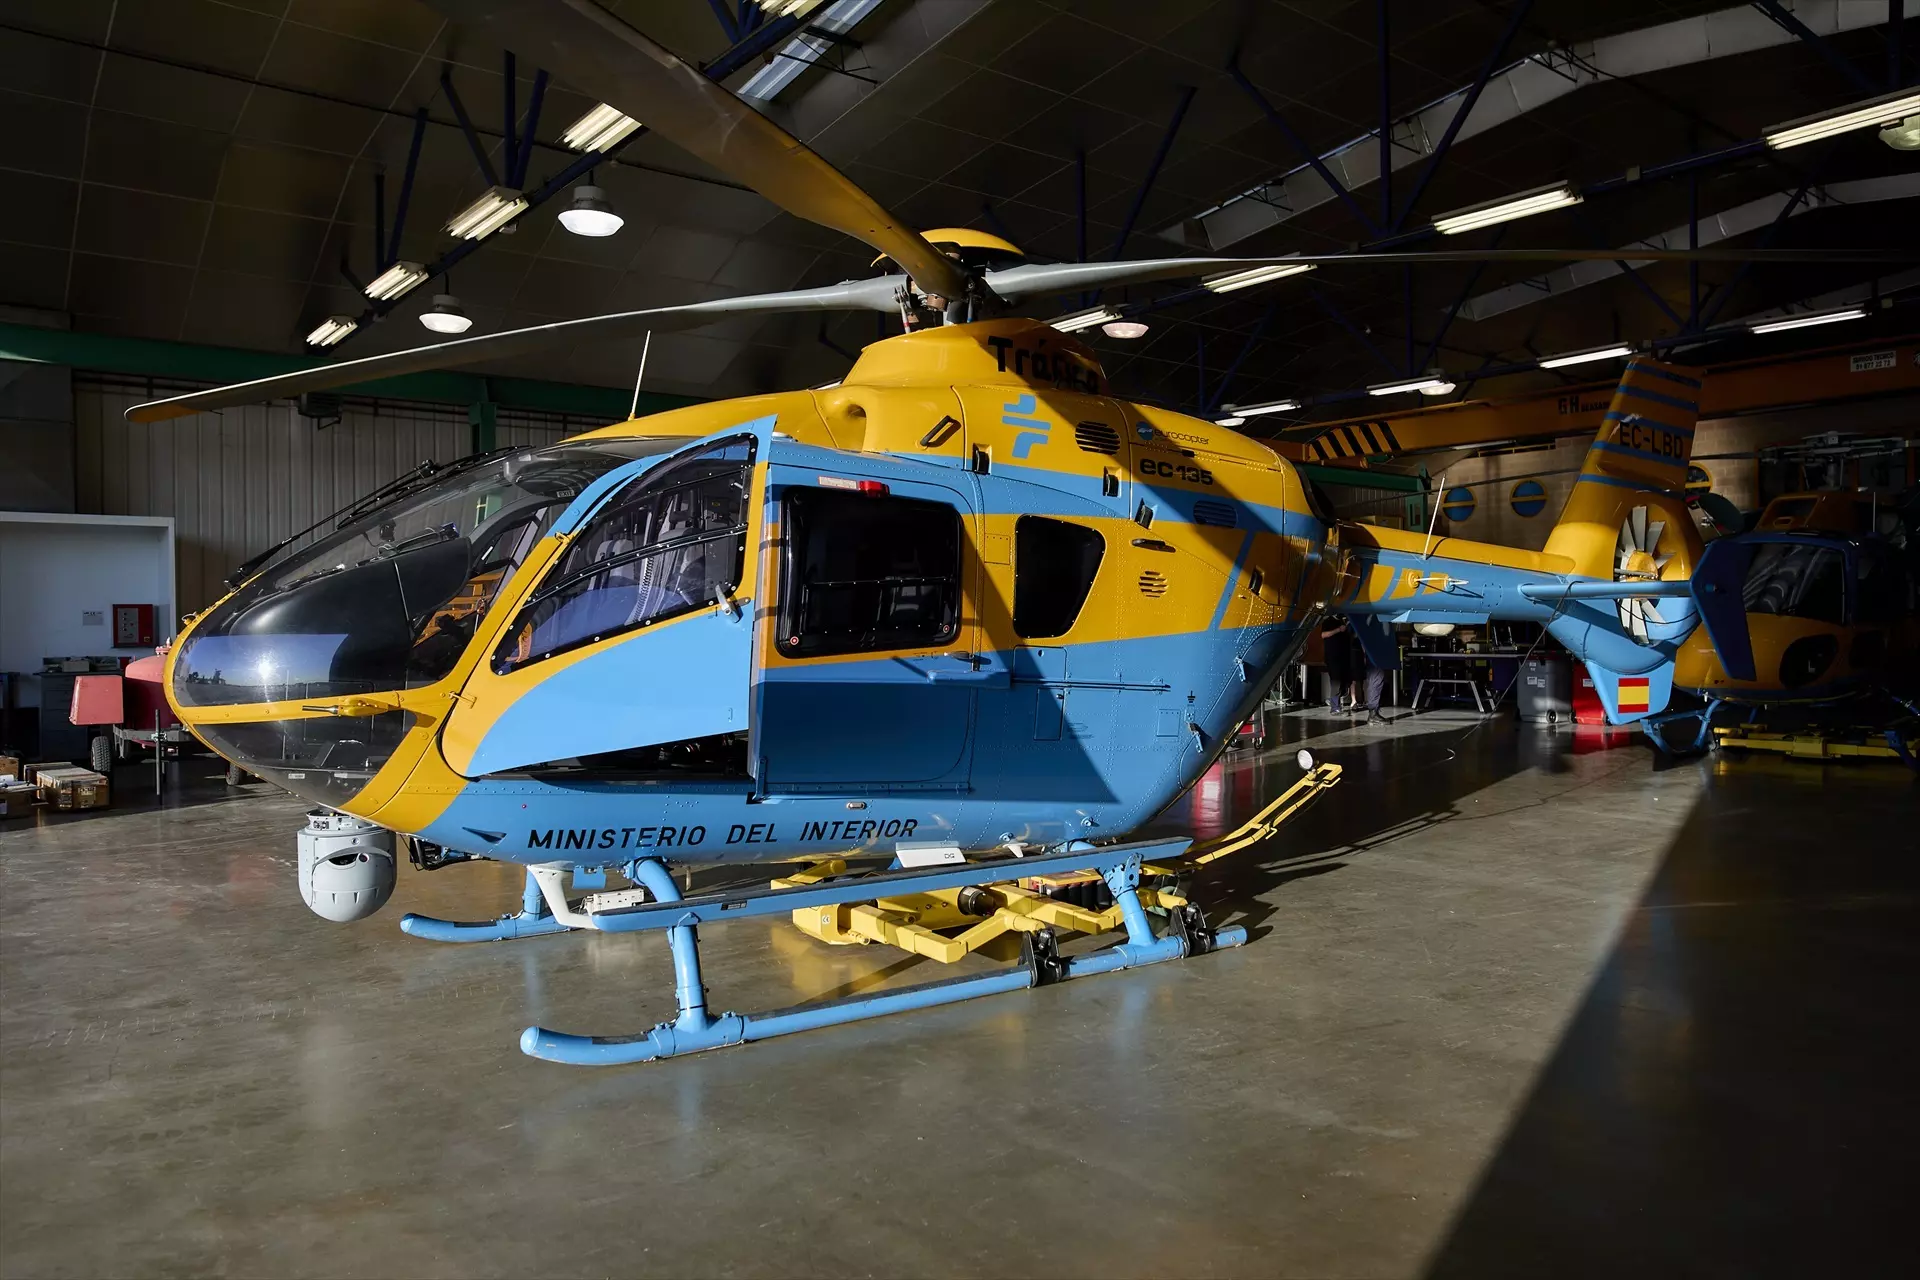 Cuánto cuesta el helicóptero de la DGT que se estrelló en Madrid?